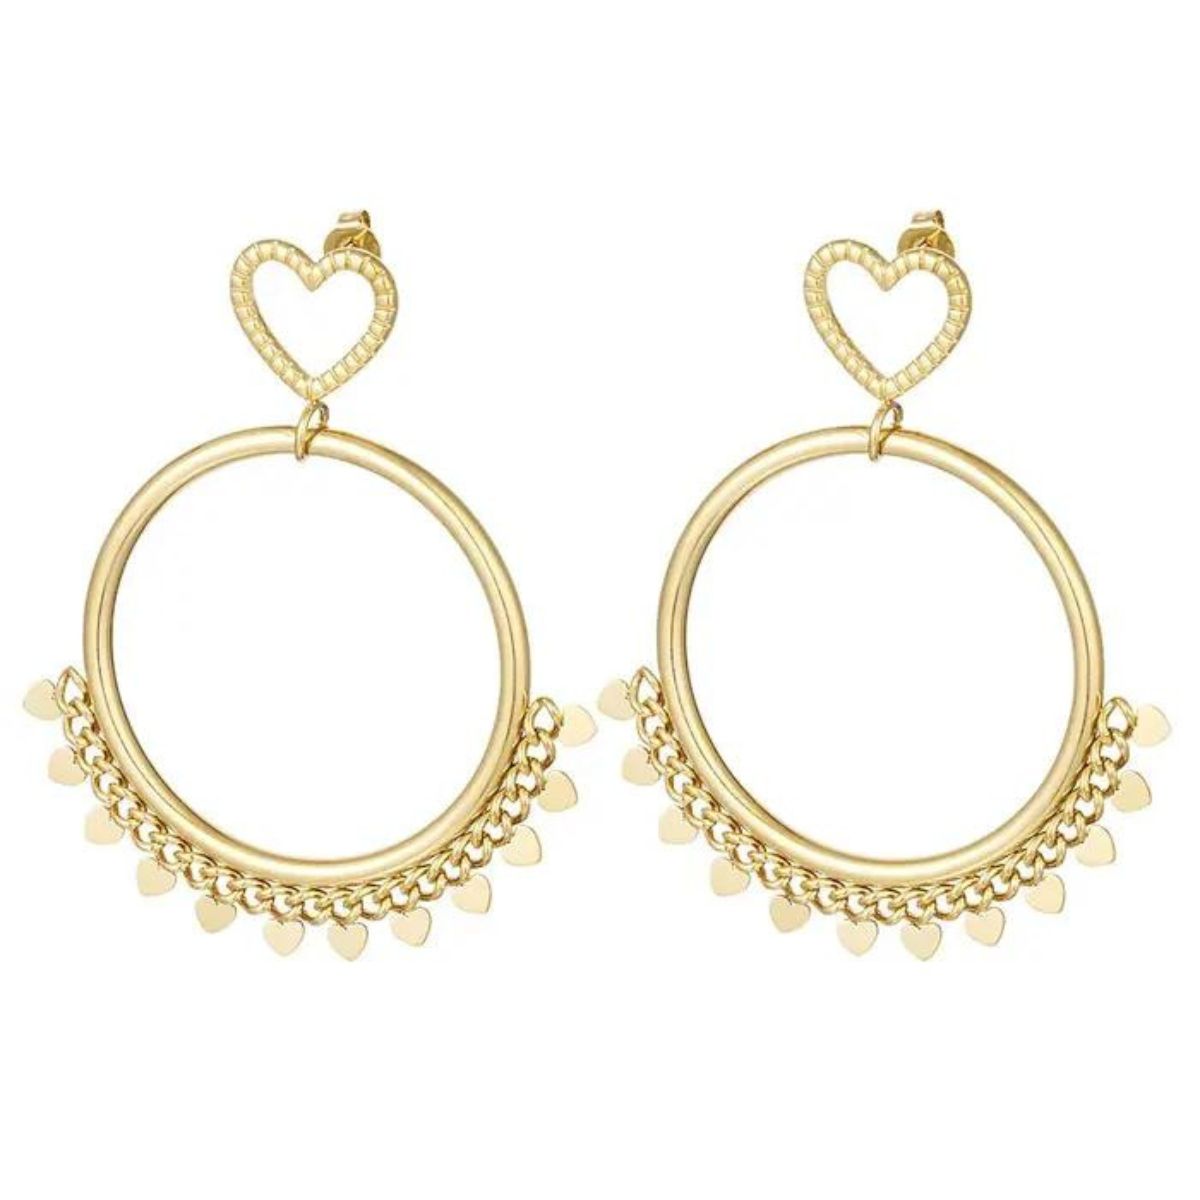 1 4 Boho Love Stud Earrings - Stainless Steel - ασήμι 925